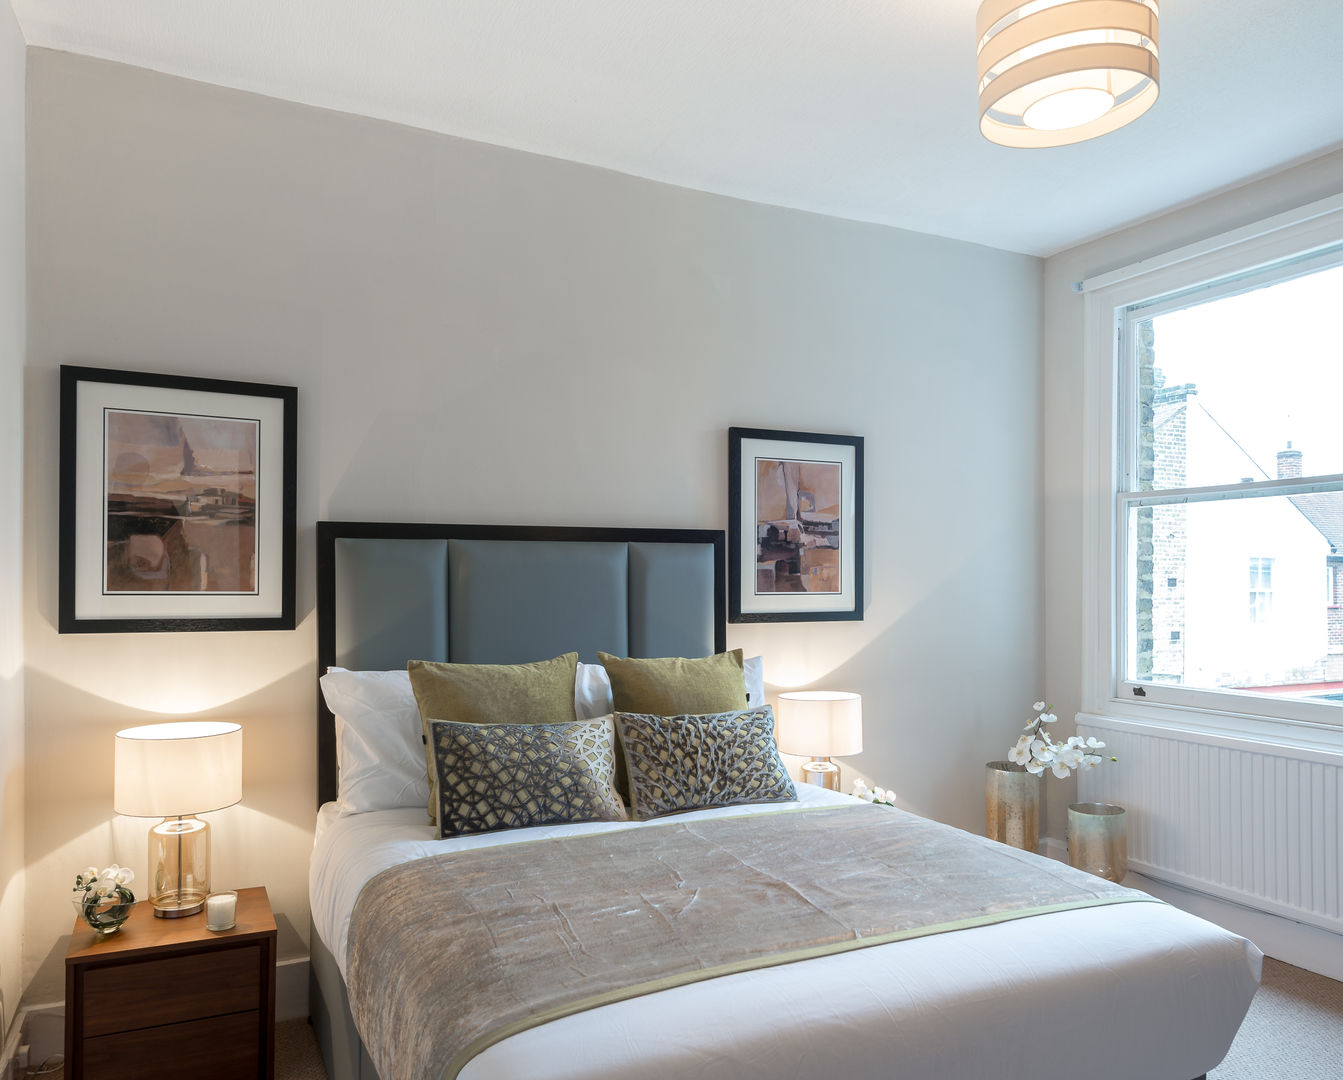 Bedroom 2 In:Style Direct Dormitorios de estilo minimalista